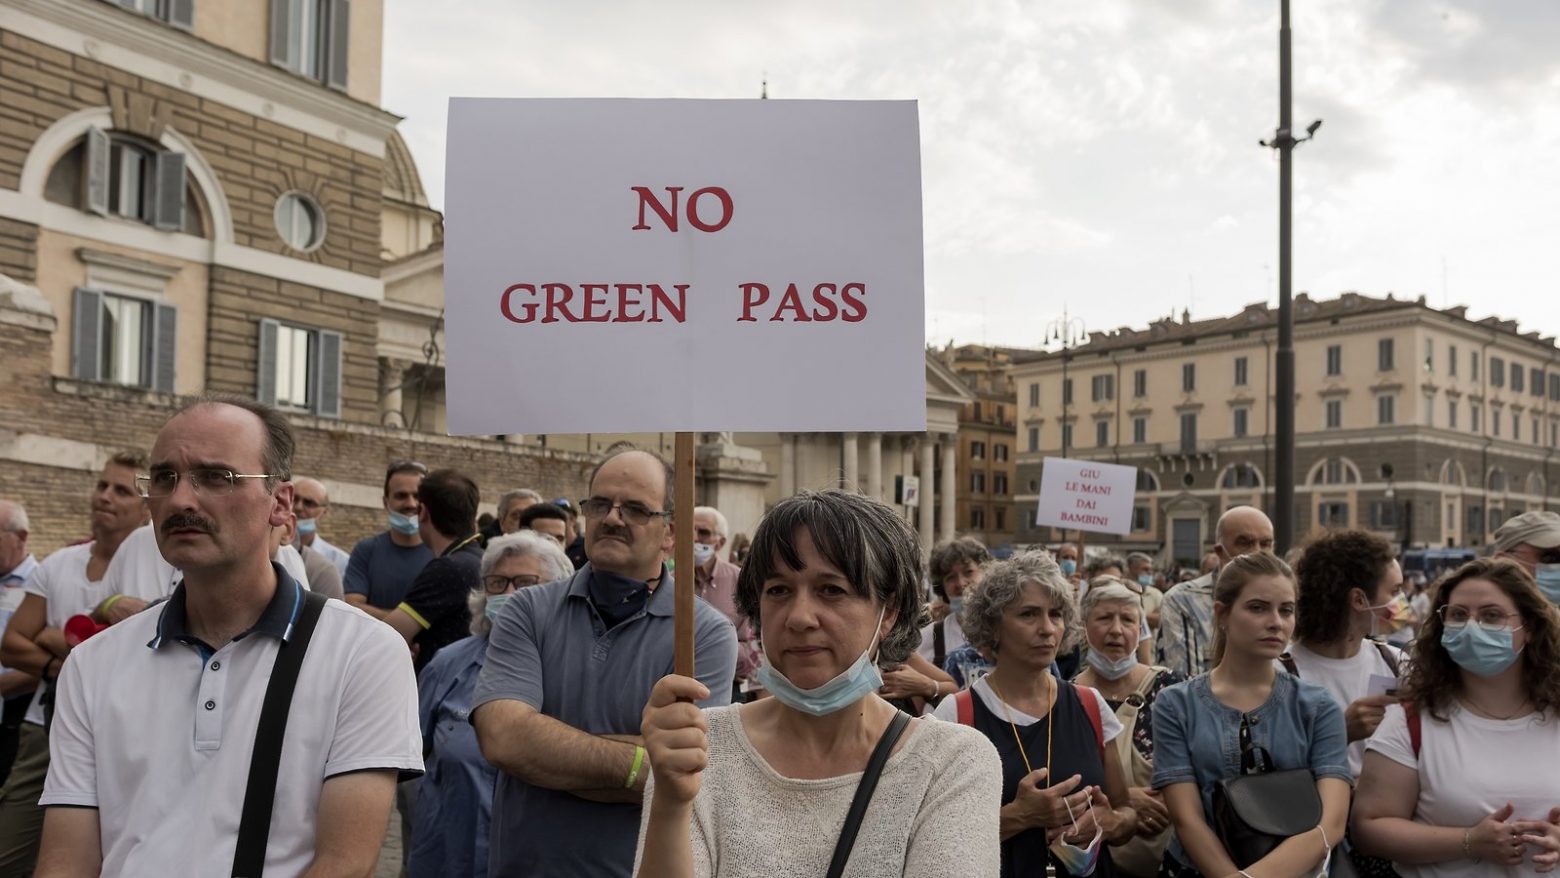 Ιταλία - Ανώτατη αστυνομικός σε διαδήλωση κατά του πράσινου πάσου